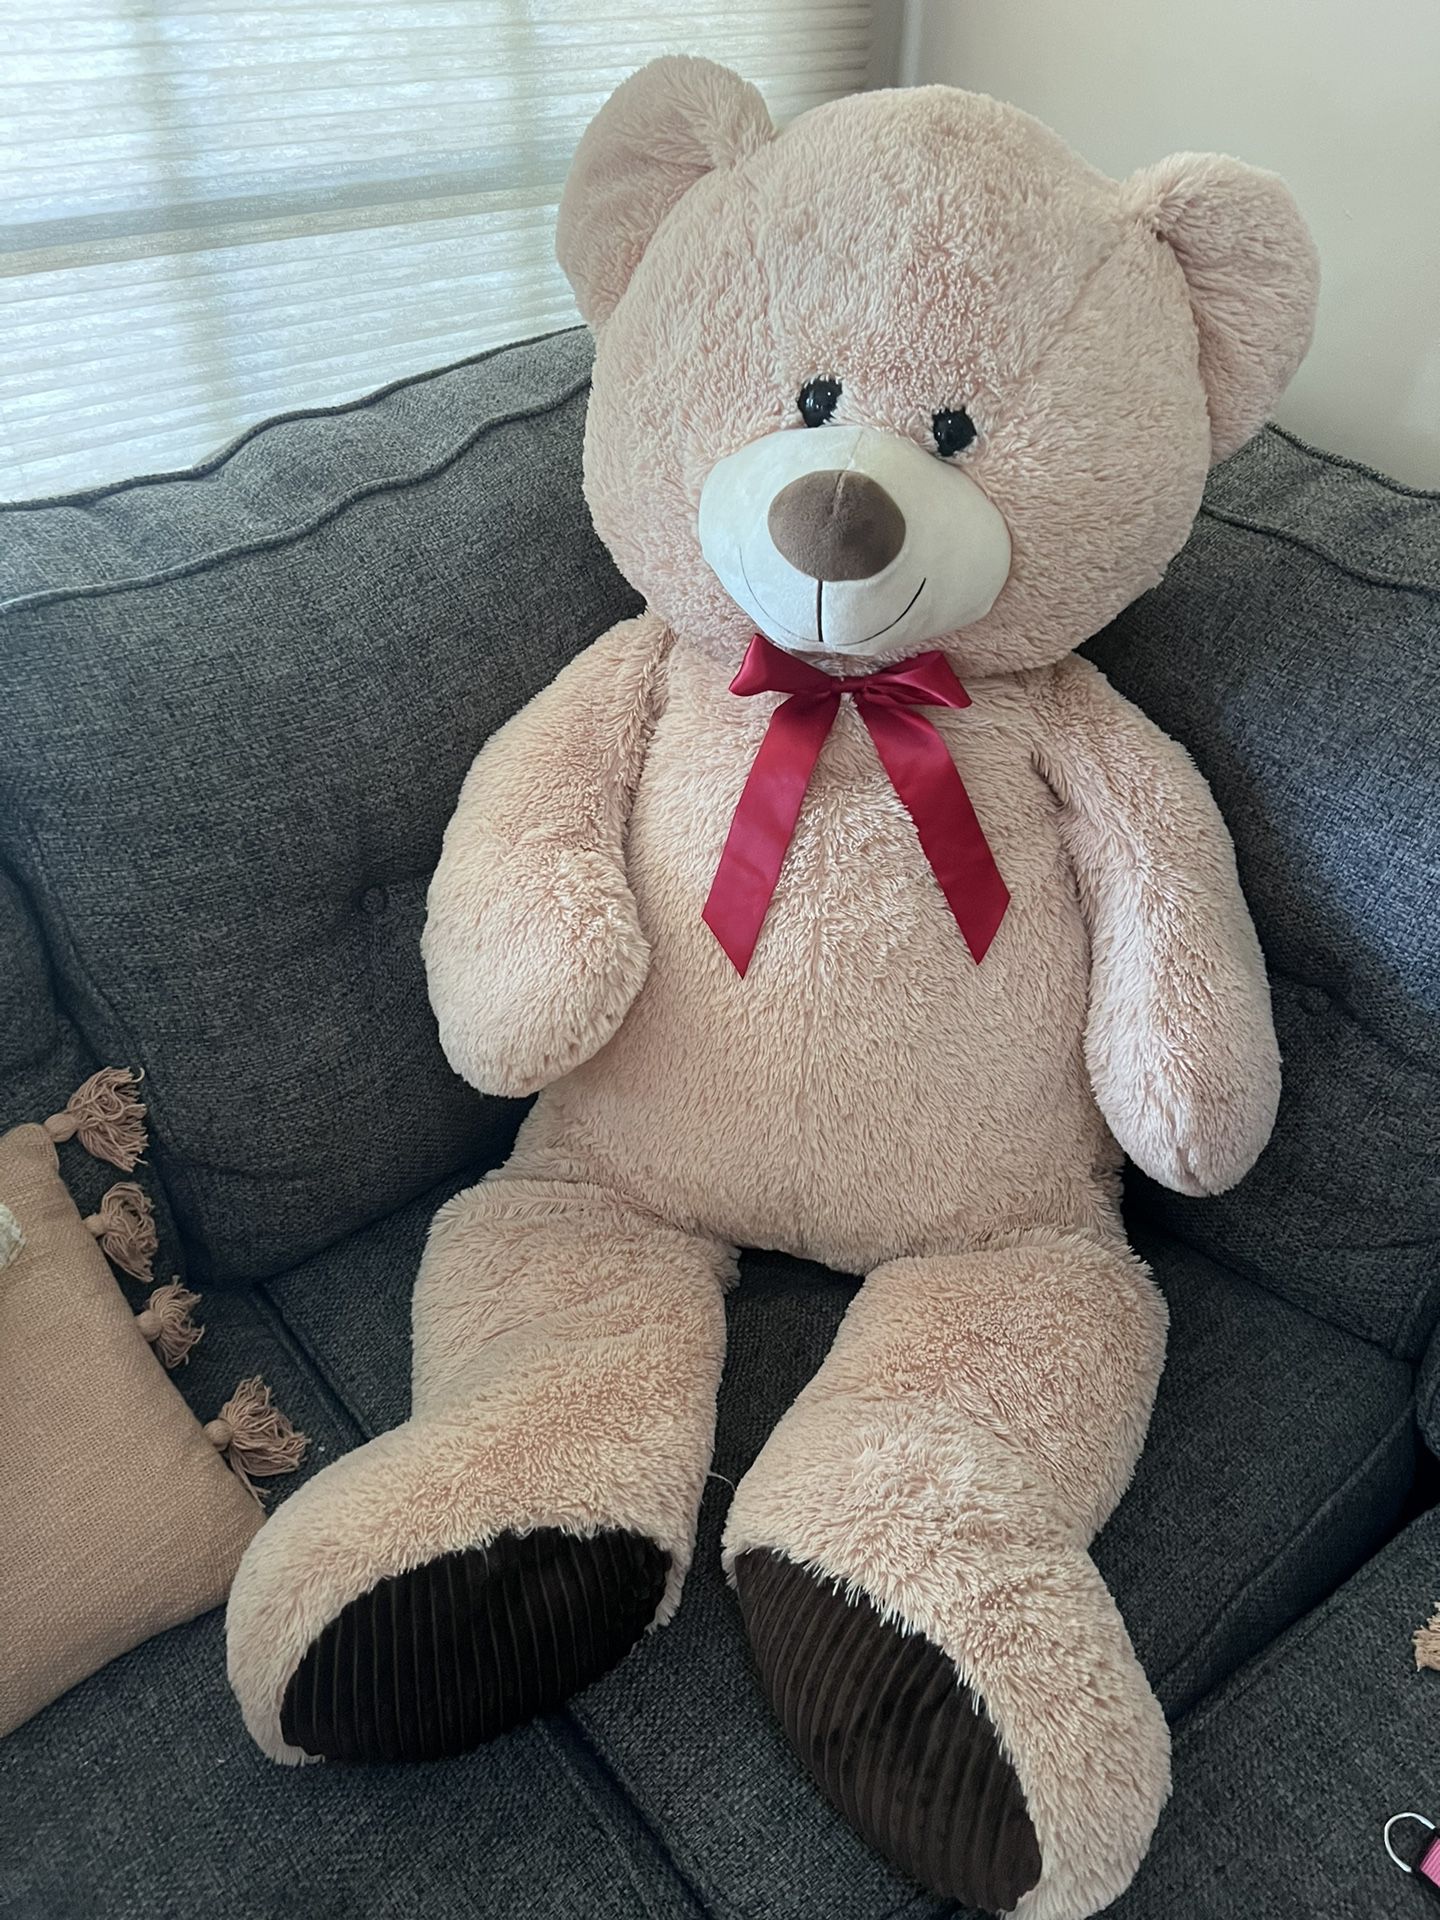 42 “ Teddy Bear